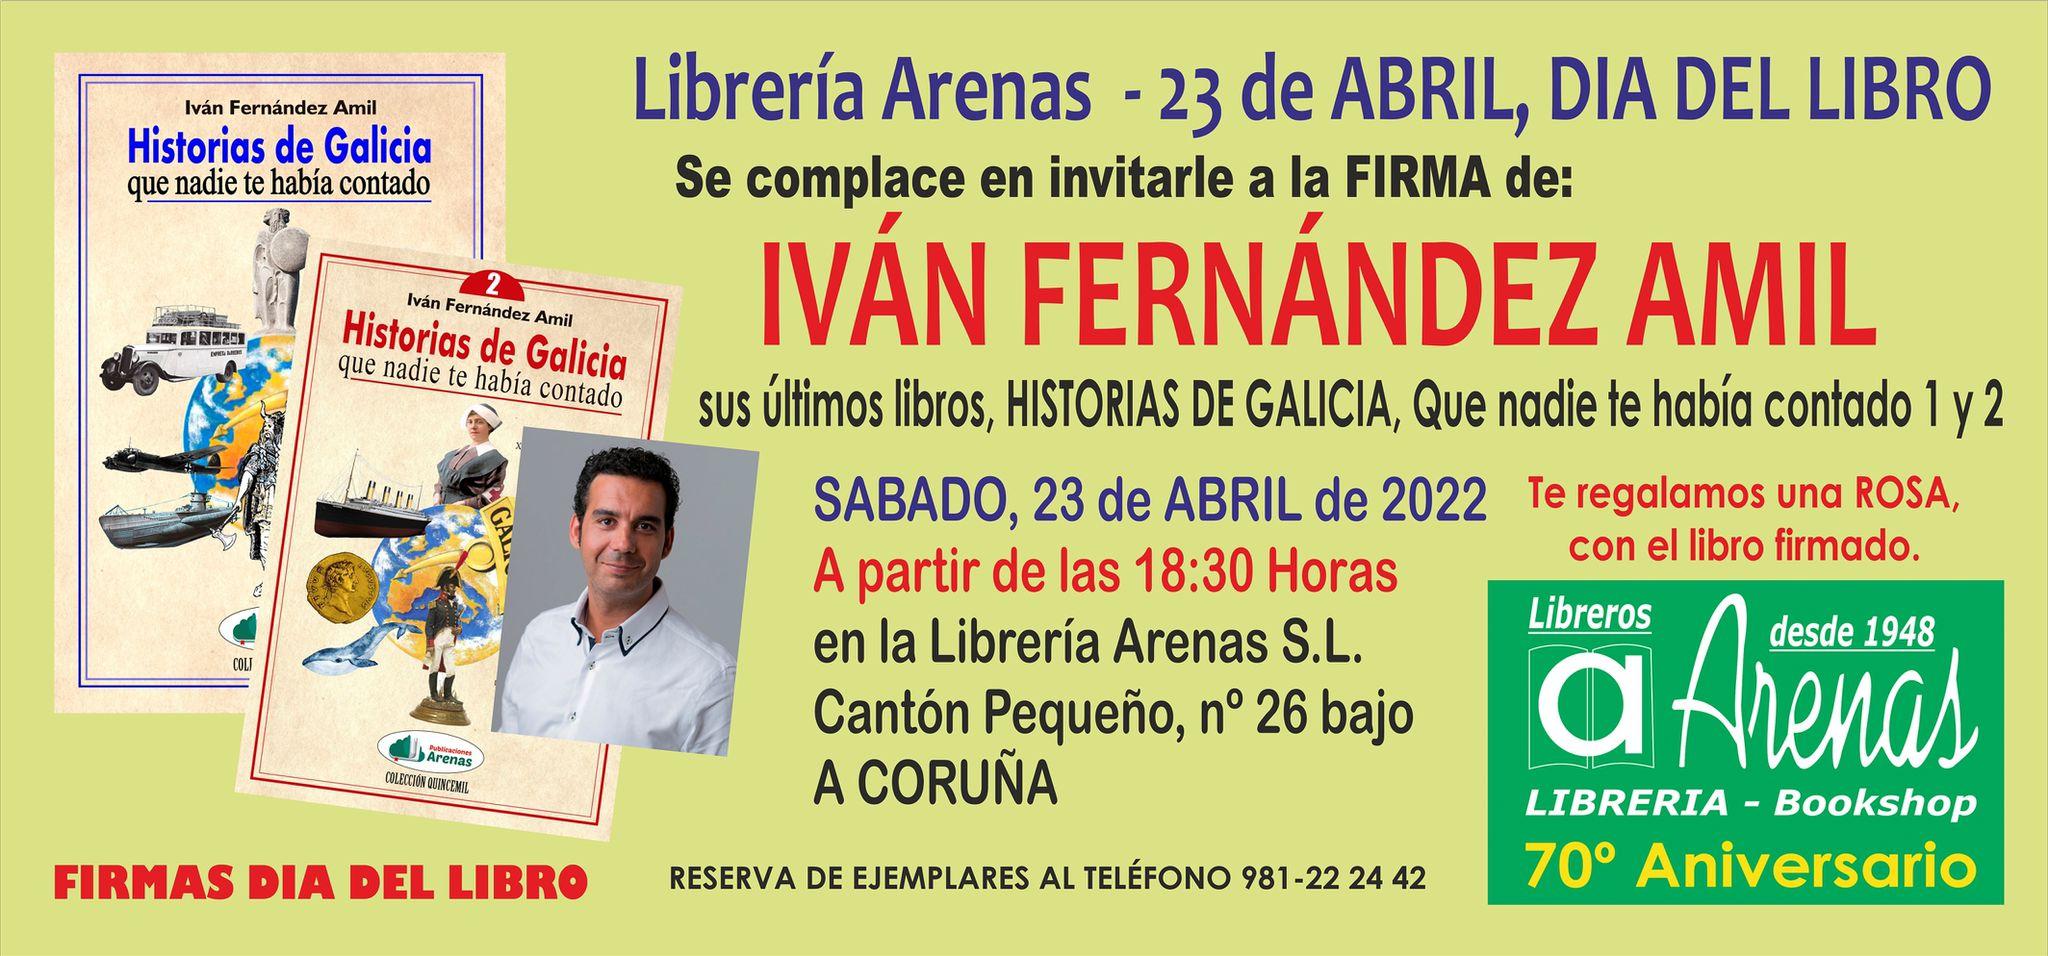 Cartel sobre la firma de libros de Iván Fernández Amil (Cedida).